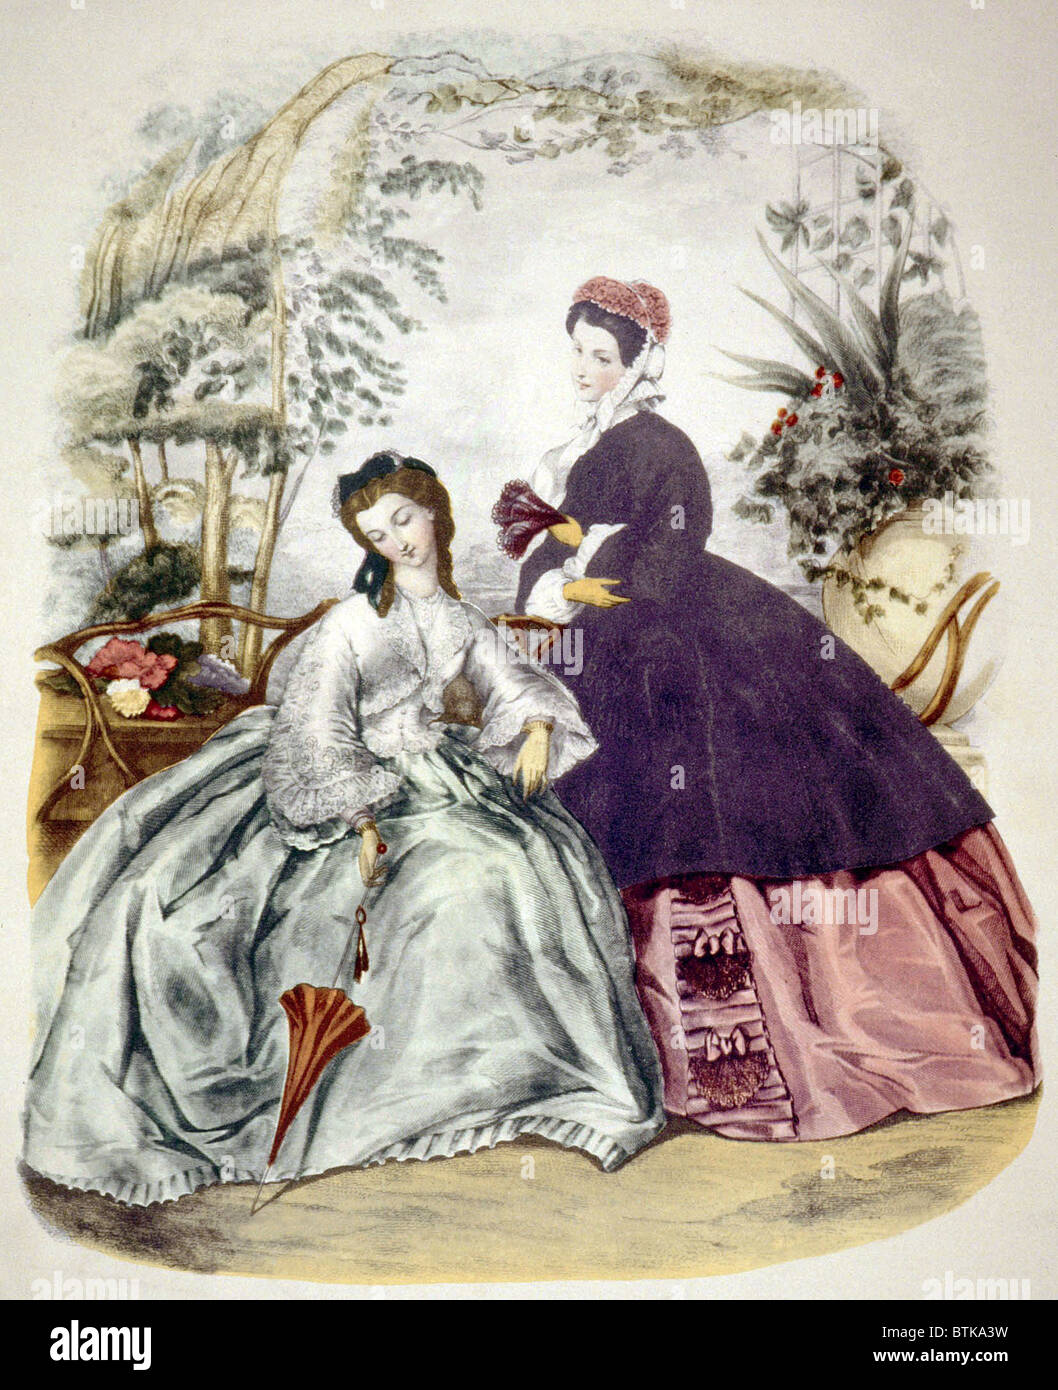 Illustrazione del XIX secolo le mode, nel 1860 circa, da 'La Mode Illustree'. Foto: courtesy Everett Collection Foto Stock